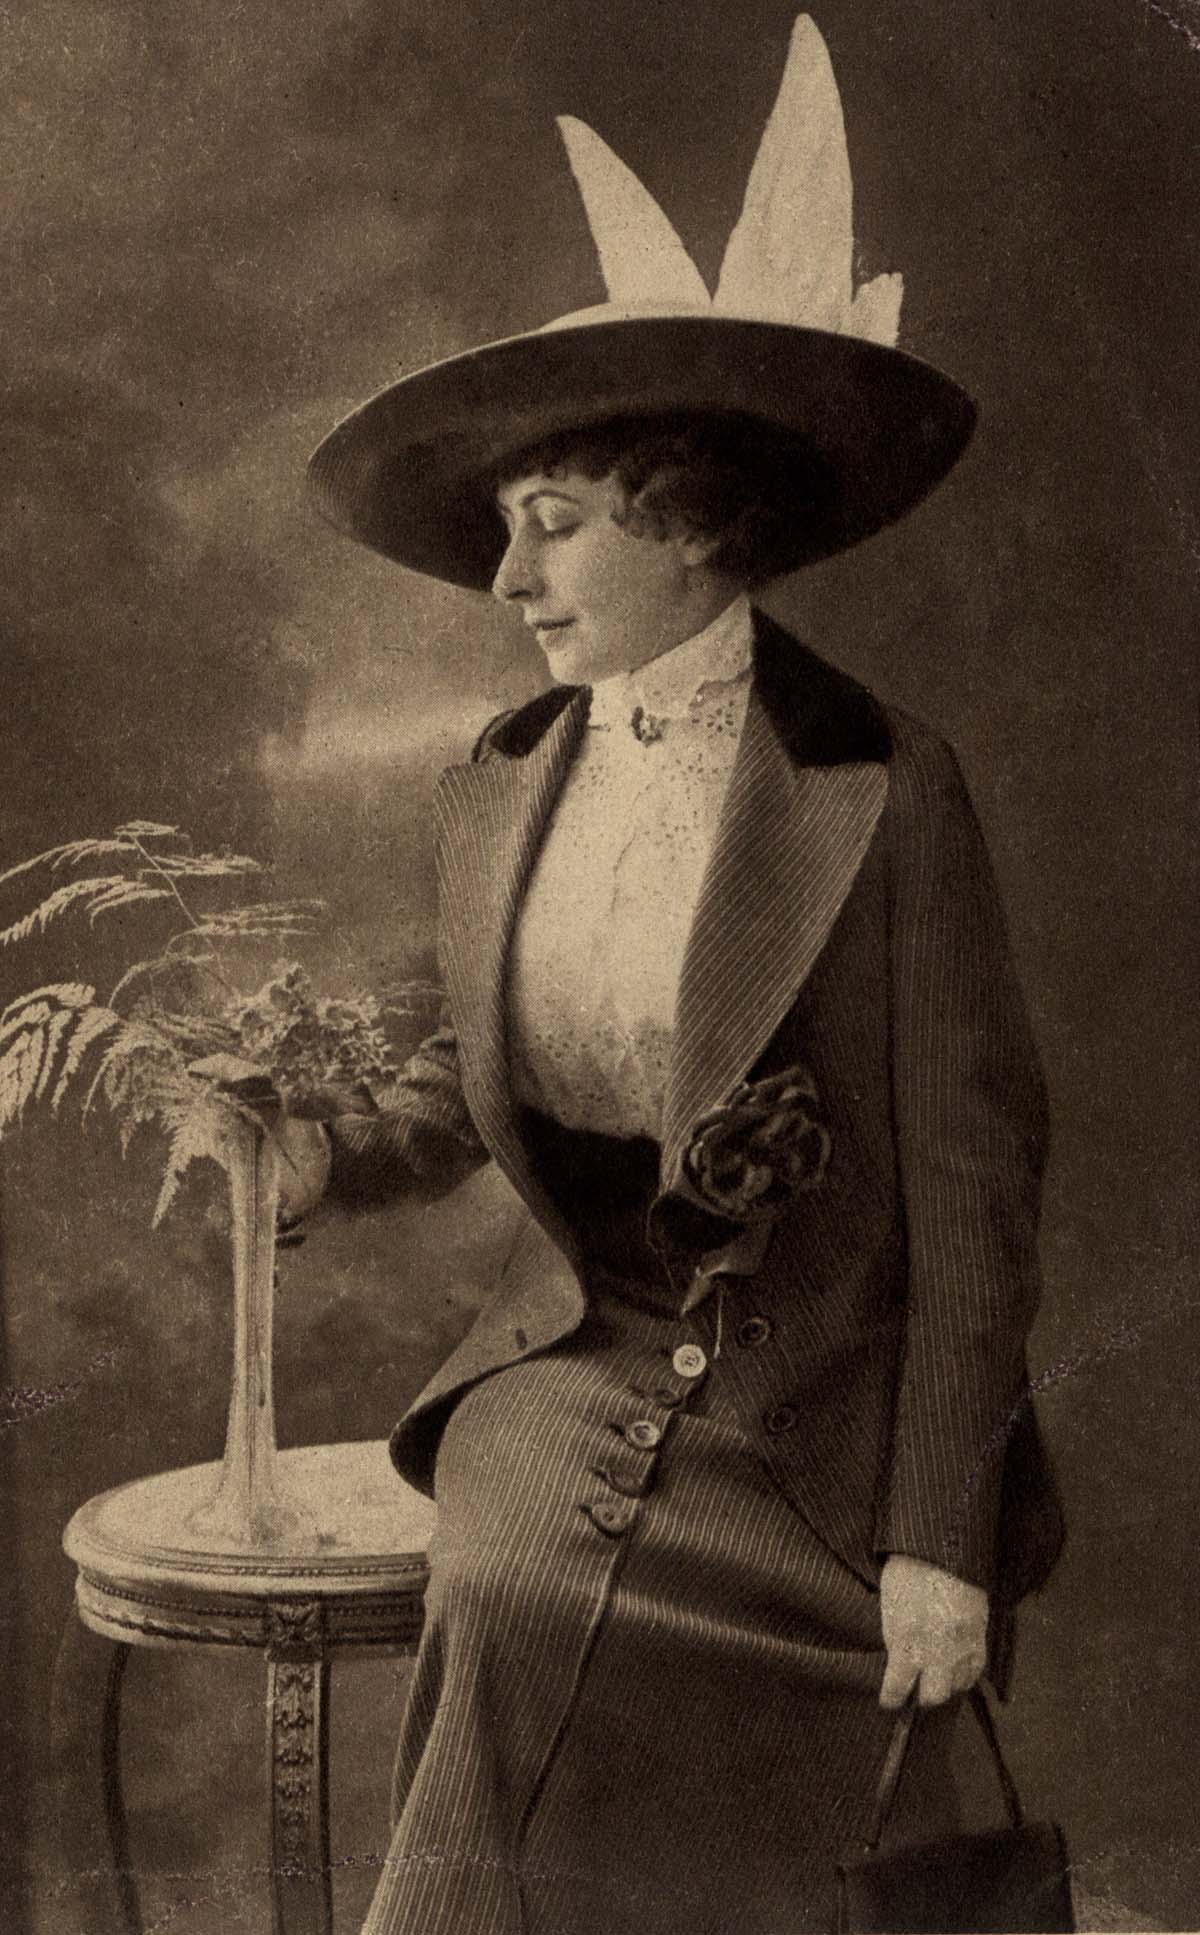 Portret Felicji Pichor-Śliwickiej przy stoliku. Pocztówka, po 1900. Ze zbiorów BN.